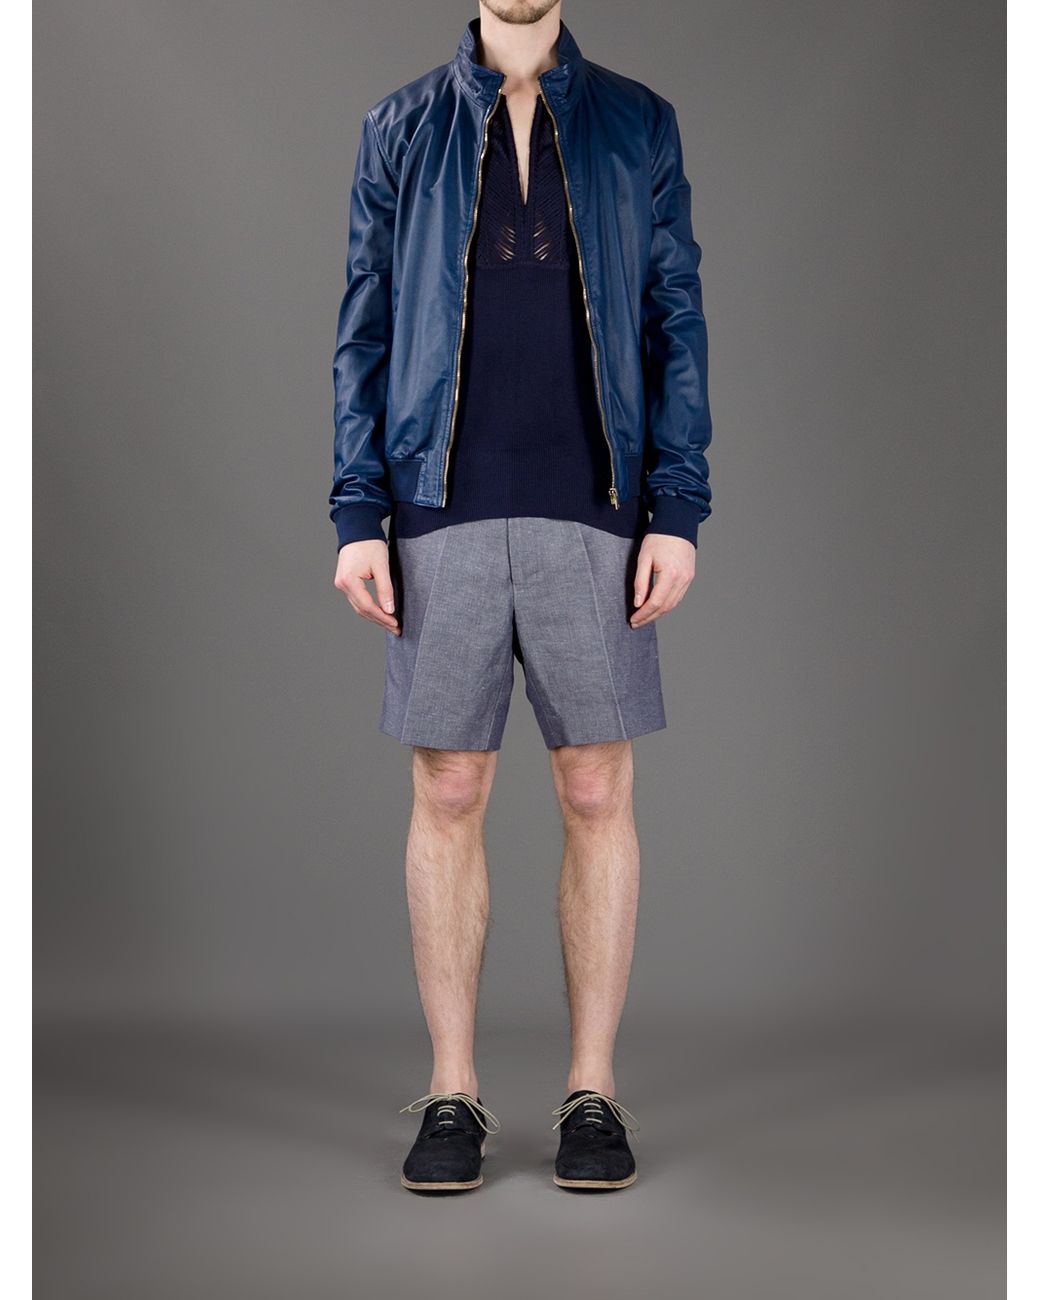 Brobrygge Akvarium Mandag Gucci Leather Bomber Jacket in Blue for Men | Lyst